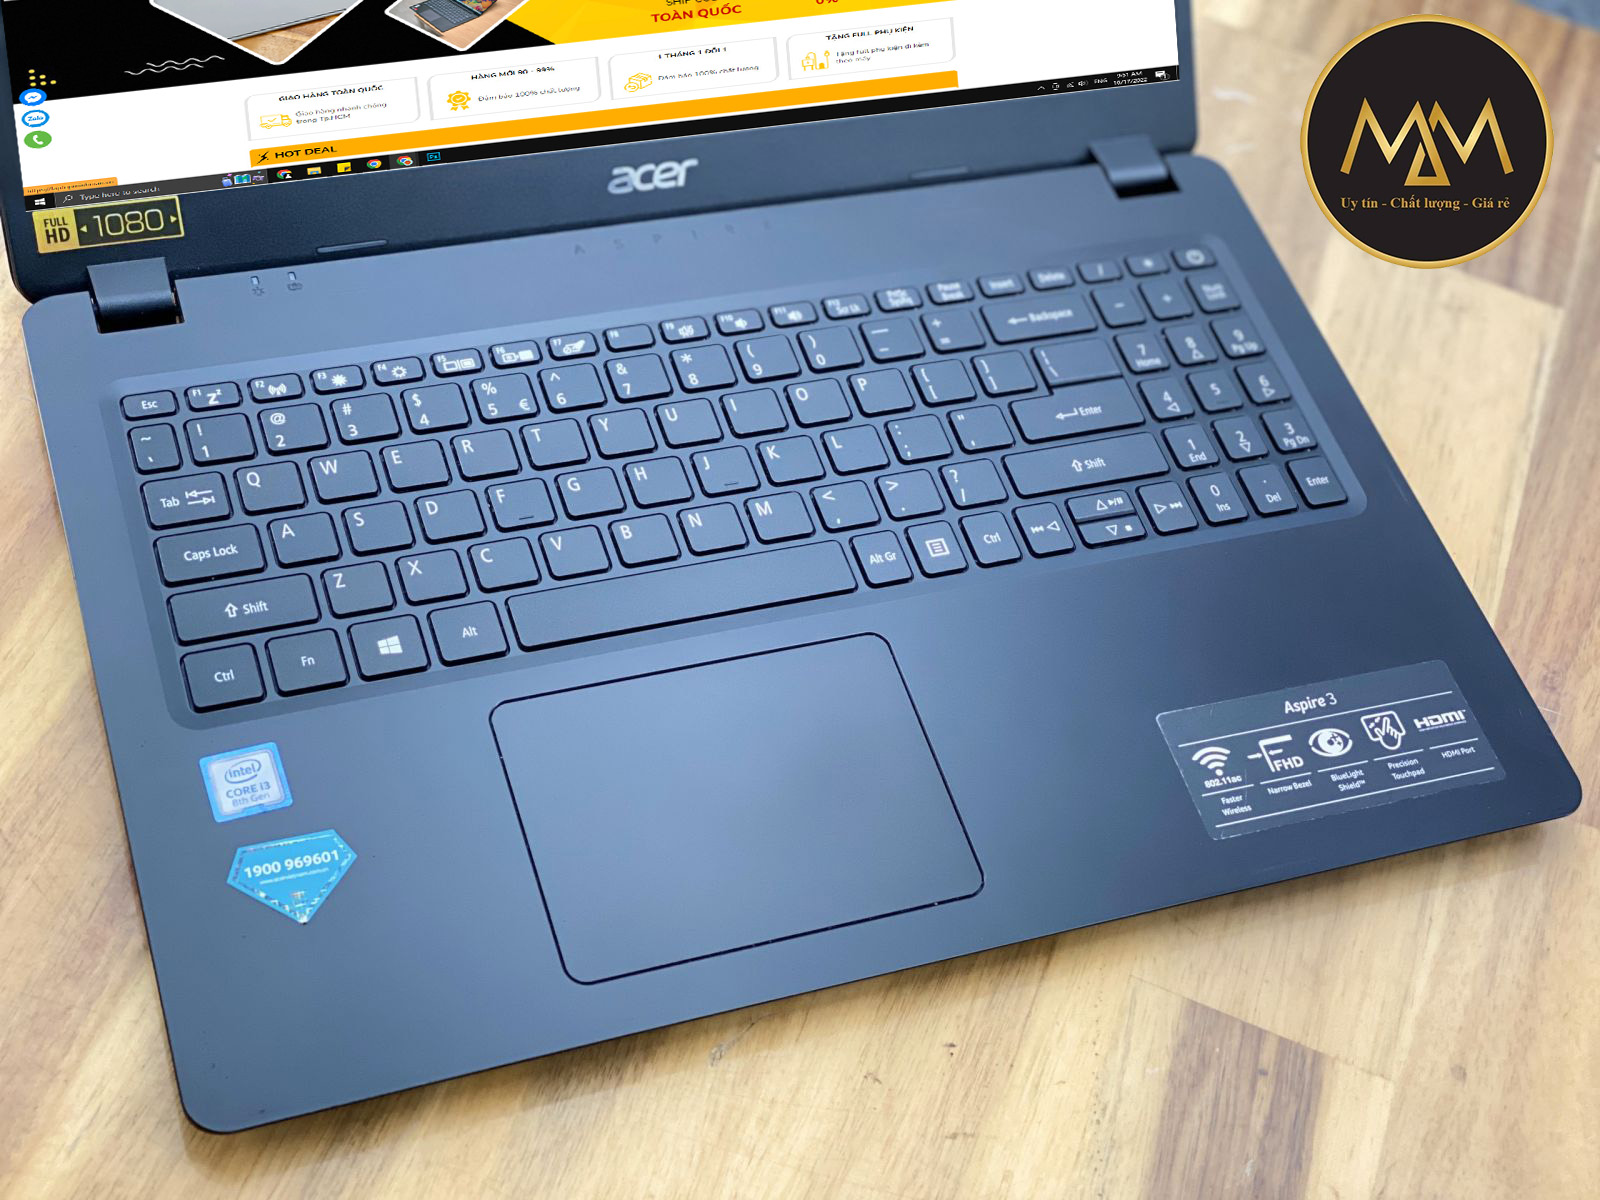 Laptop Cũ Giá Rẻ Acer Aspire A315-54K I3 7020U SSD 256GB FULL HD Viền Mỏng Chuyên Văn Phòng1